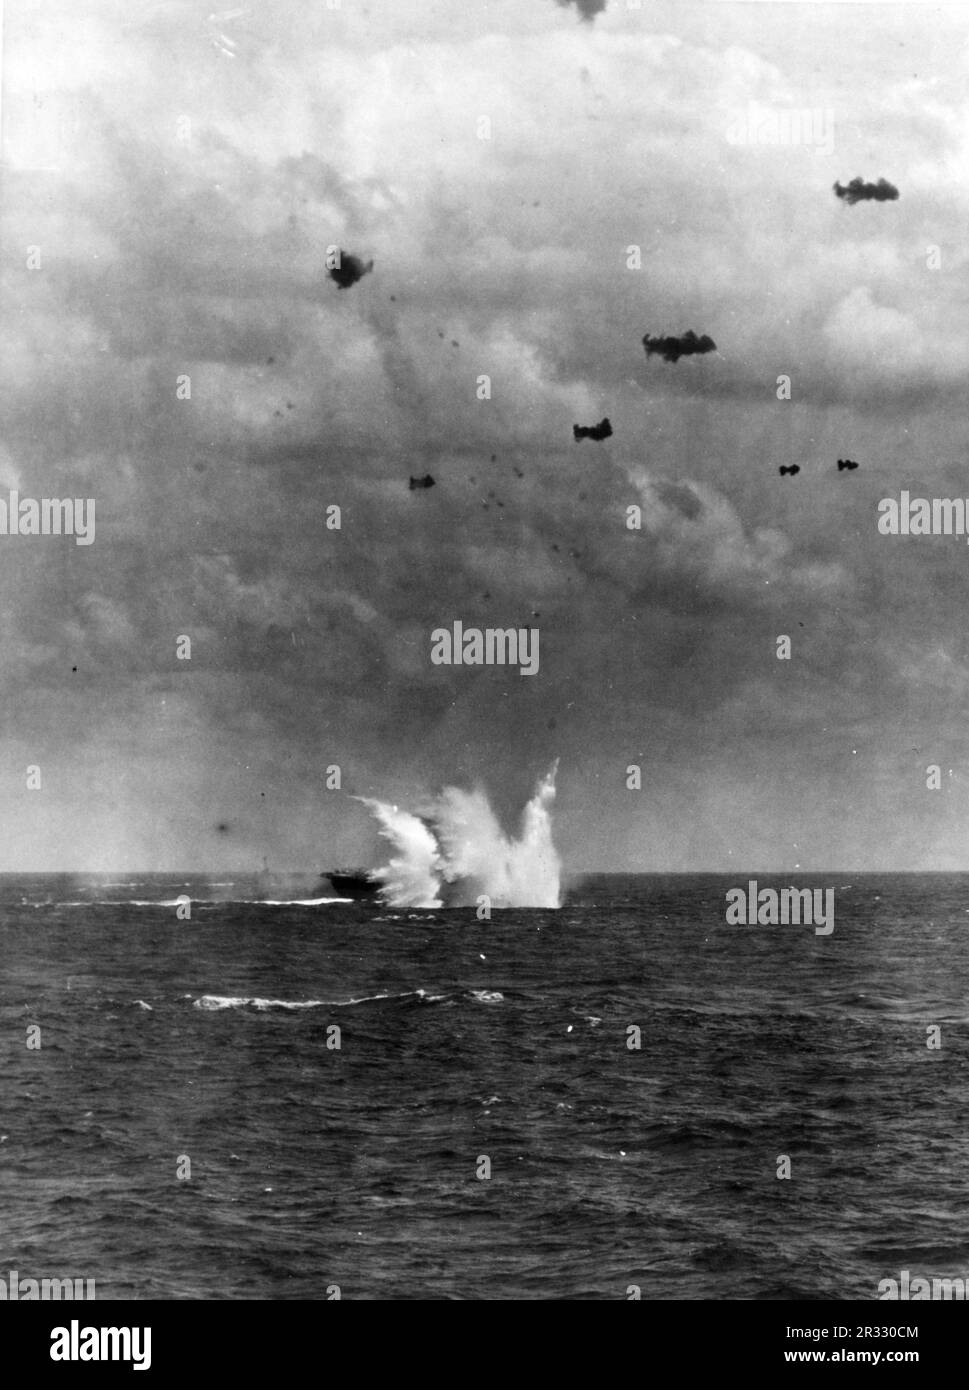 Un avión kamikaze golpea el agua del cuarto de estribor de los Estados Unidos Portaaviones de la Armada USS Enterprise (CV-6), durante operaciones frente a Okinawa, 11 de abril de 1945. Cuando Japón se enfrentaba a la derrota a finales de 1944, decidió destruir barcos estadounidenses con bombas suicidas, conocidas como Kamikaze. Estos ataques eran un arma física y psicológica potente y hundieron un total de 47 barcos a un costo de más de 3000 pilotos y aviones. A finales de 1944 la Marina de los Estados Unidos era lo suficientemente grande como para que las pérdidas fueran insignificantes y no alteraran el curso de la guerra. Foto de stock